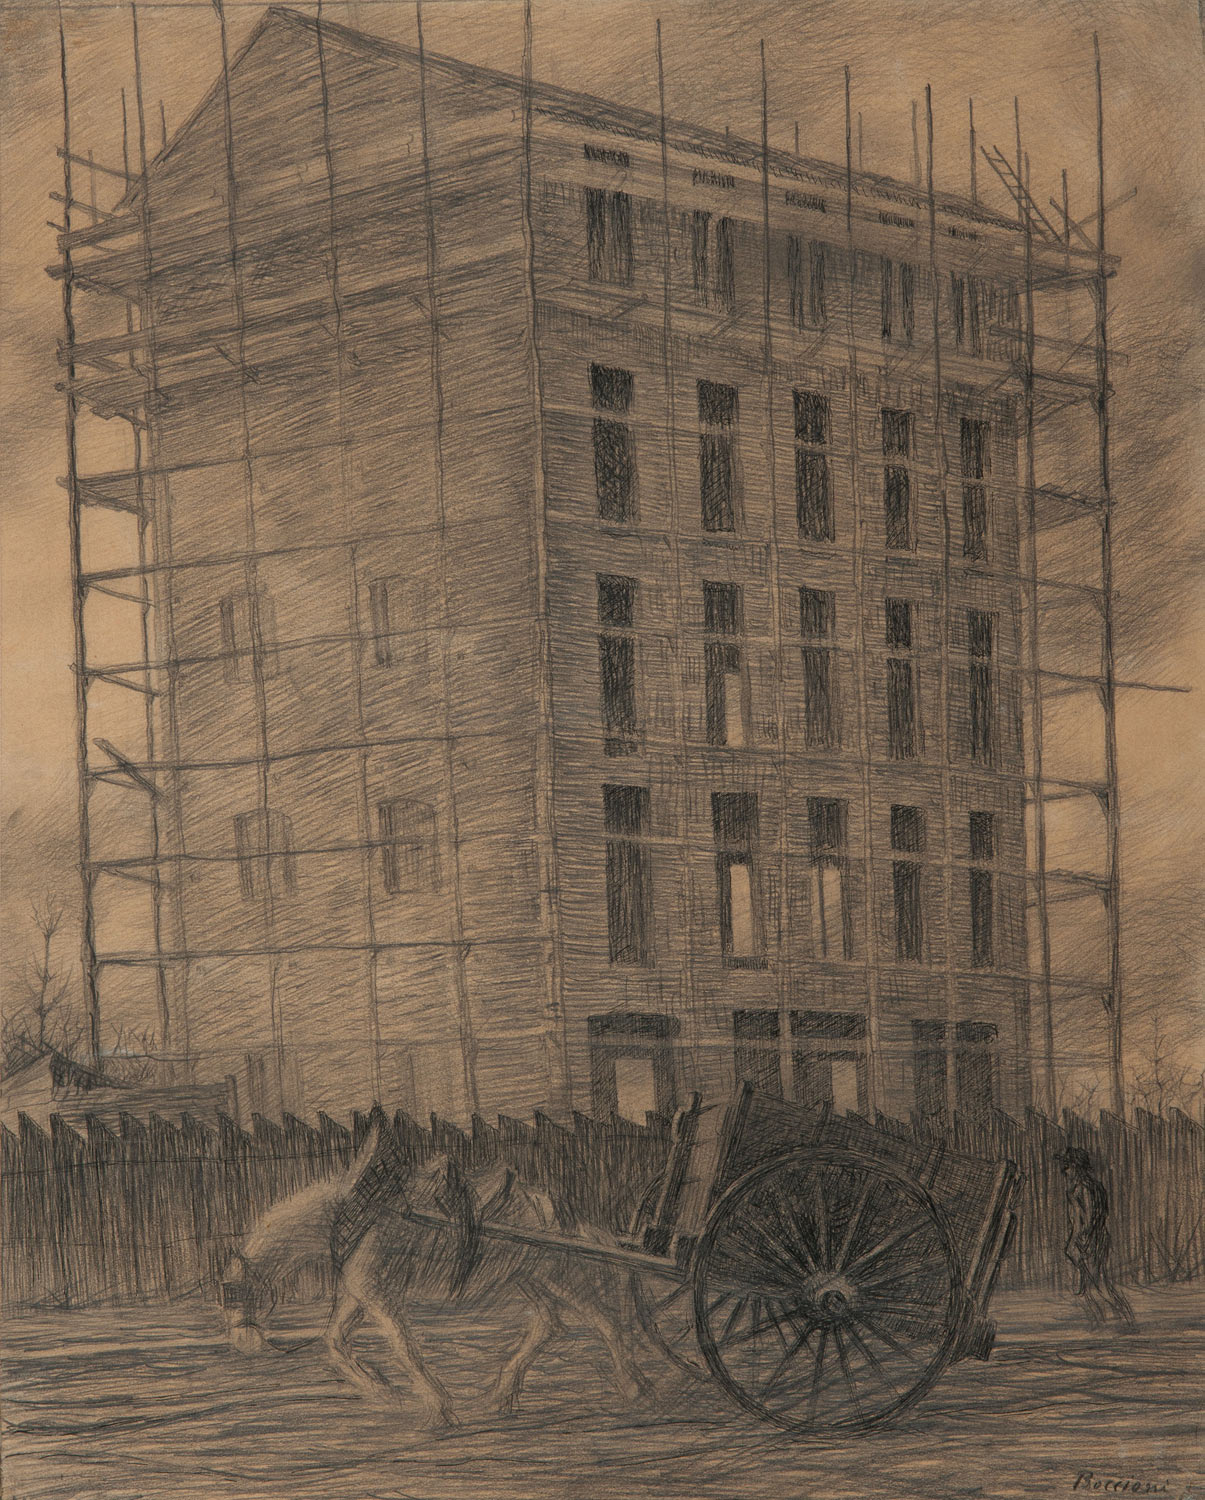 Umberto Boccioni, Casa in costruzione (1910 circa; matita su carta, 49,2 x 40 cm; Tortona, Museo Il Divisionismo)
